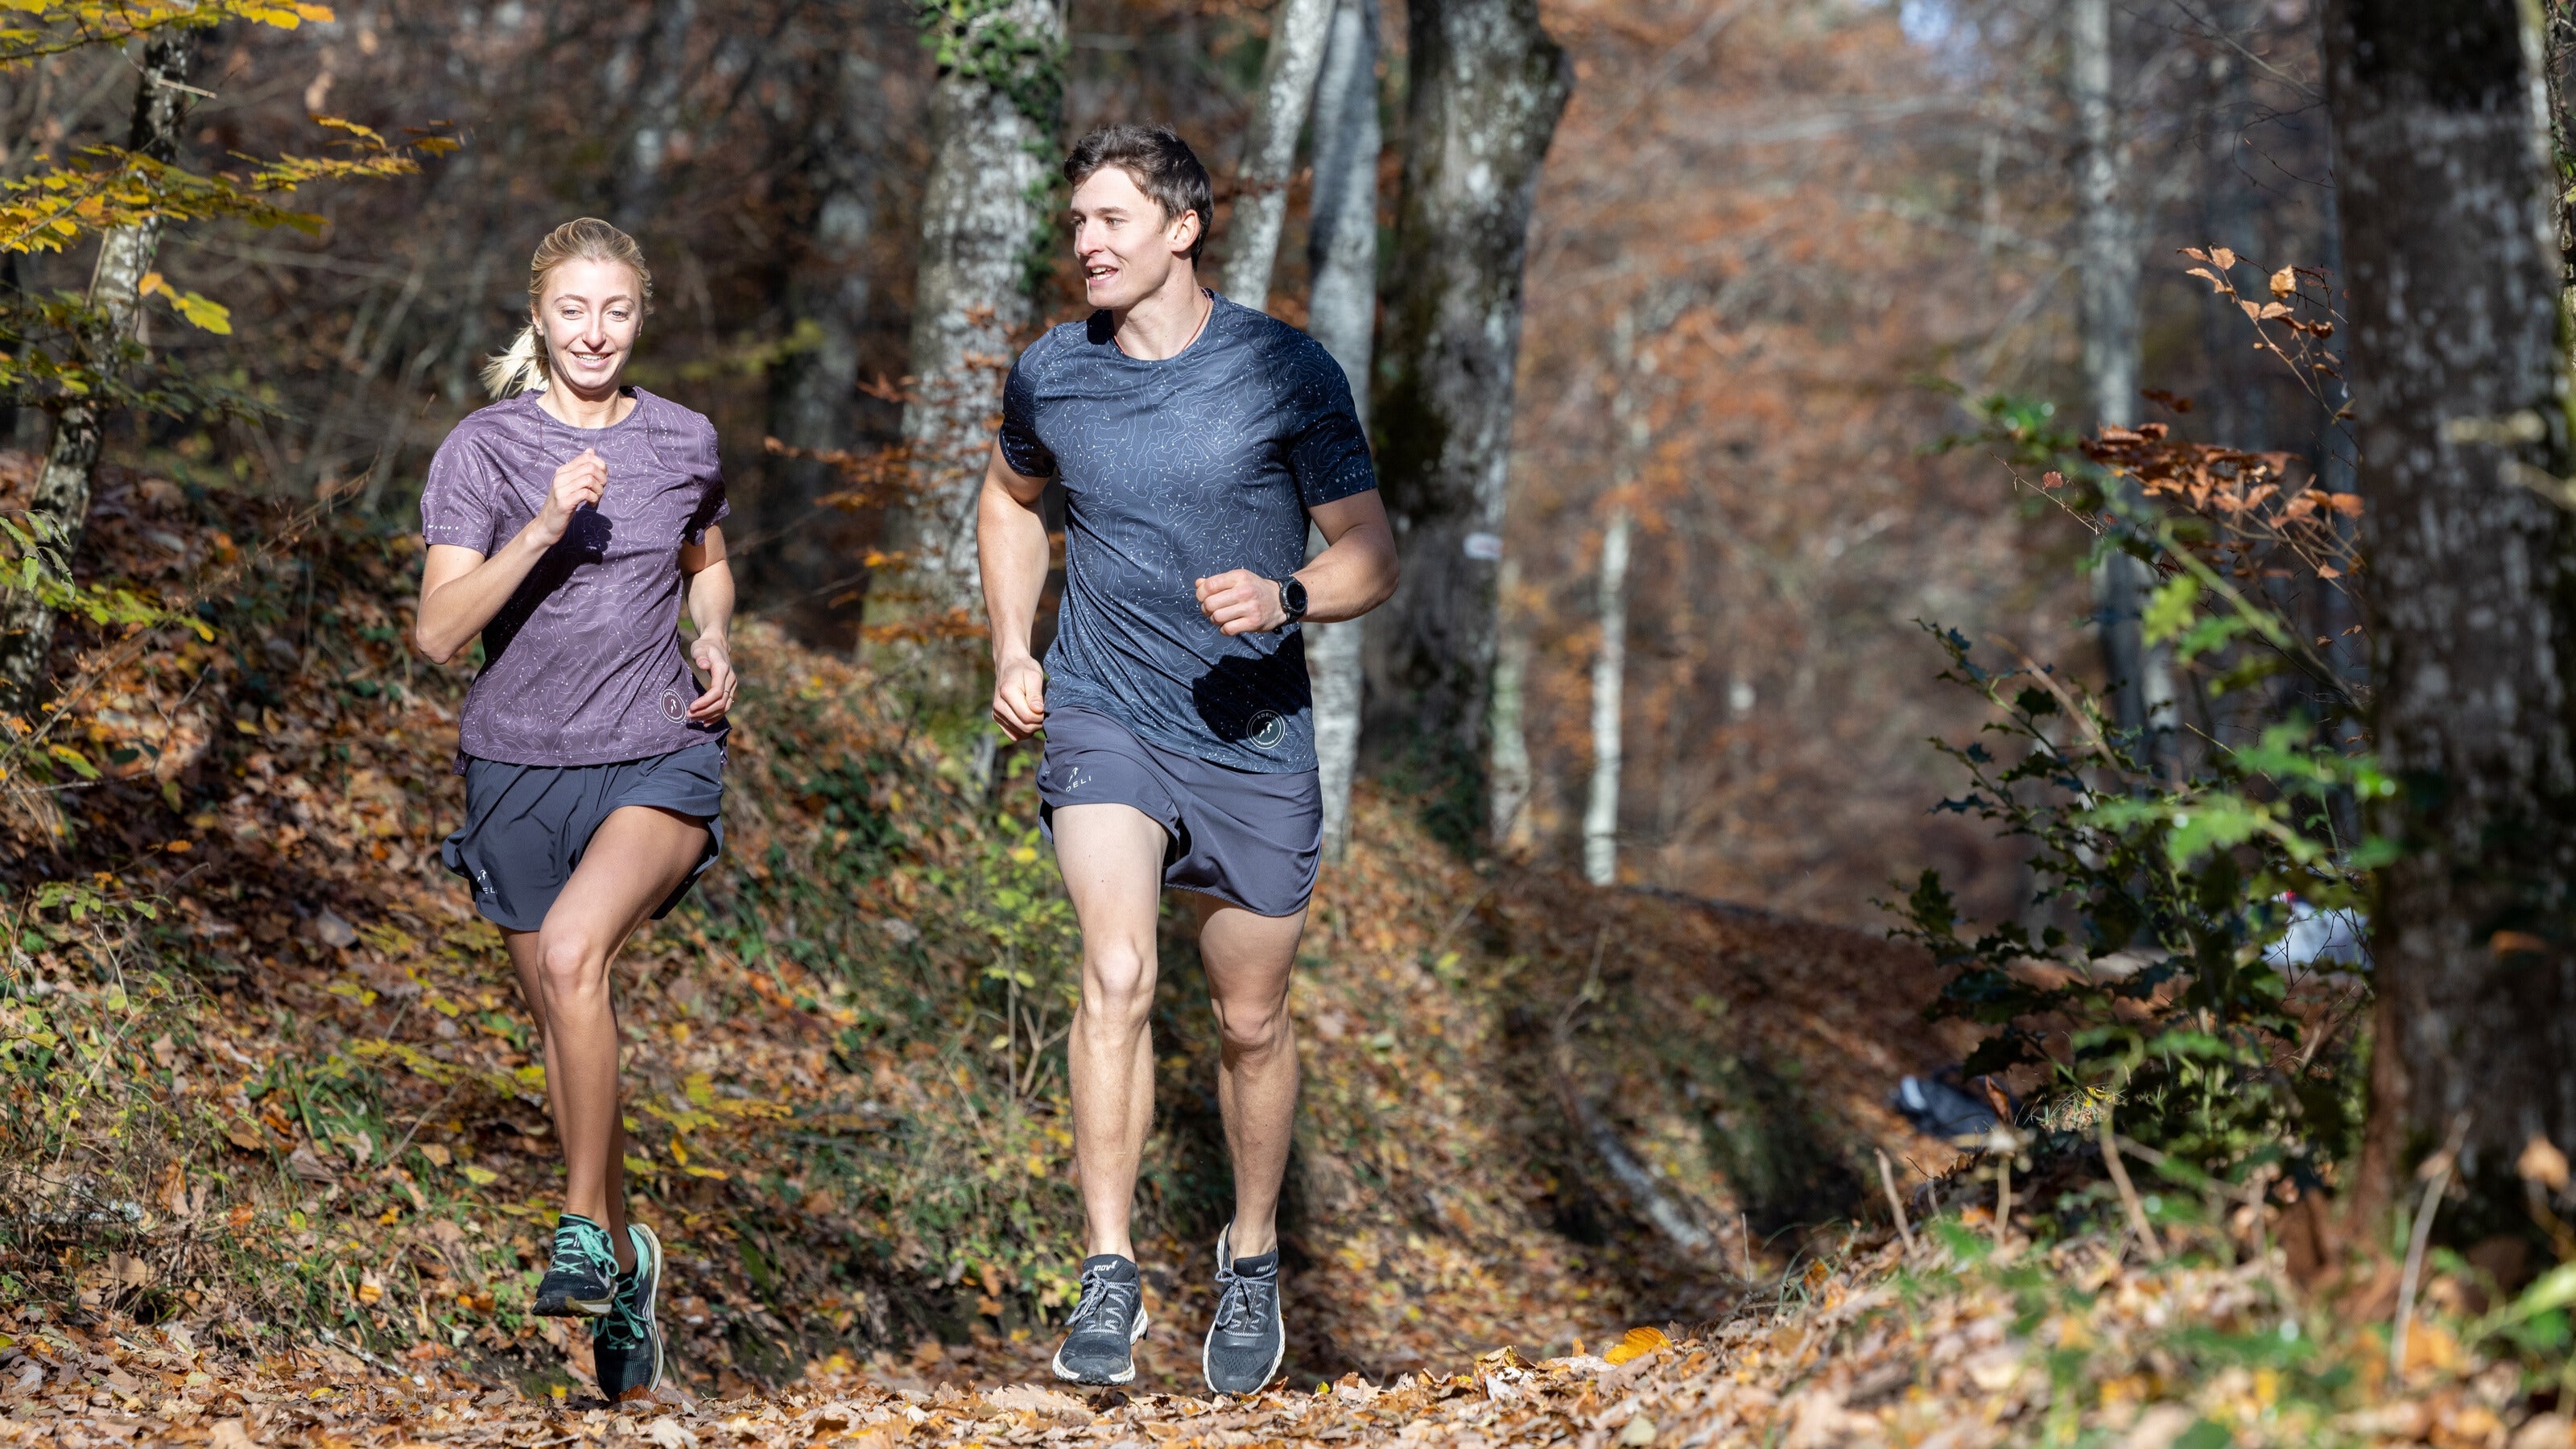 Comment bien s’entraîner pour progresser en course à pied ? Les 5 dimensions d’un entraînement de running équilibré.